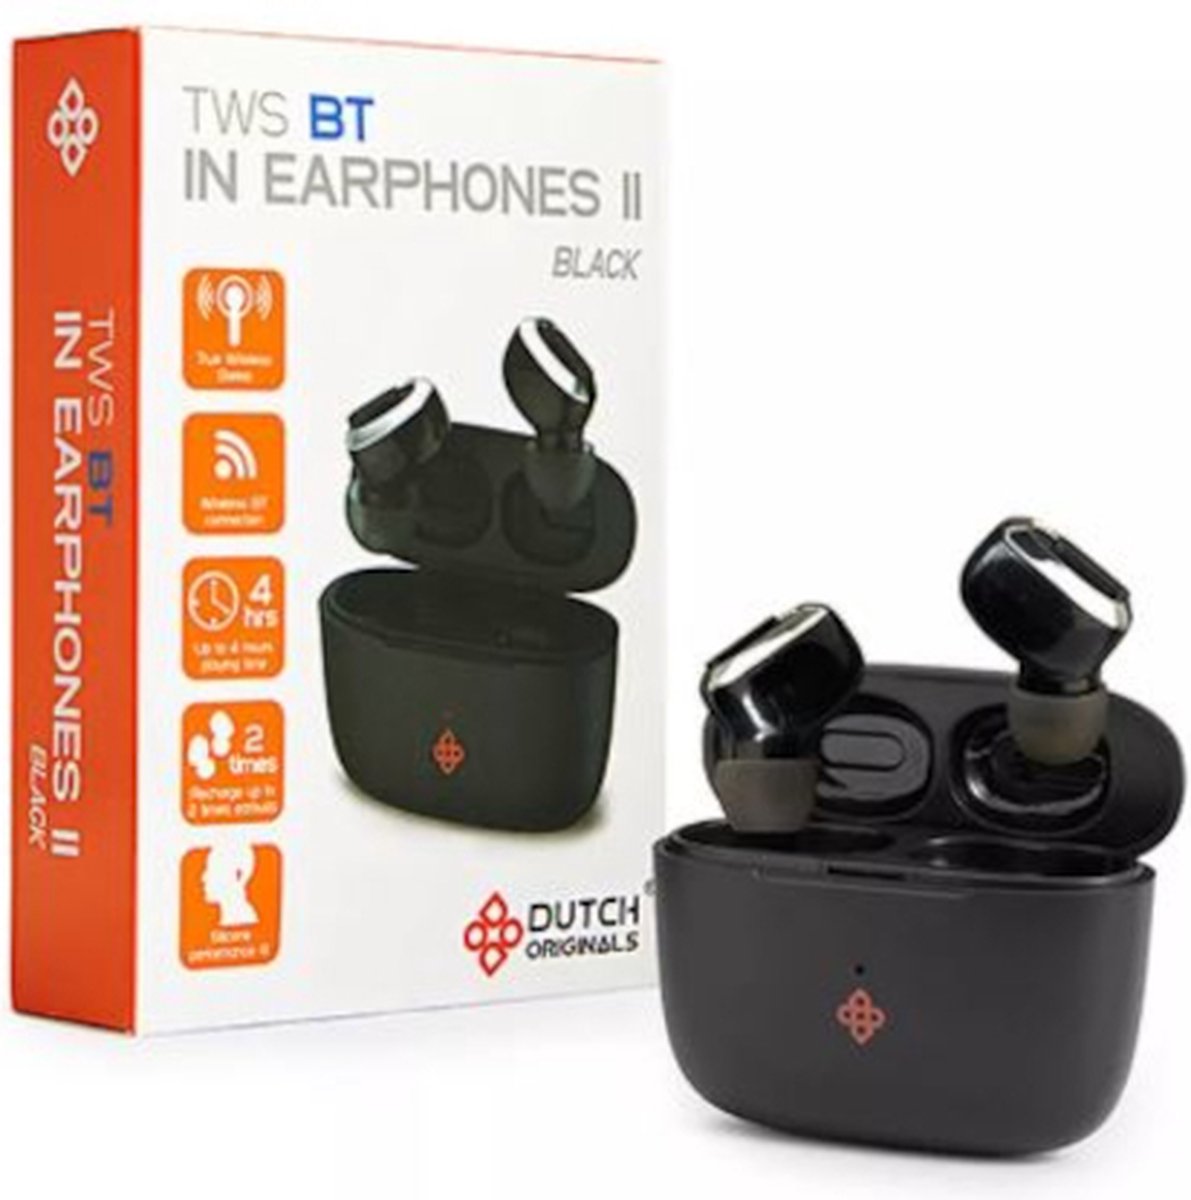 DUTCH ORIGINALS - TWS BT IN EARPHONES II BLACK - Volledig Draadloze Bluetooth Oordopjes | Geschikt voor Apple, Samsung, iOS en Android